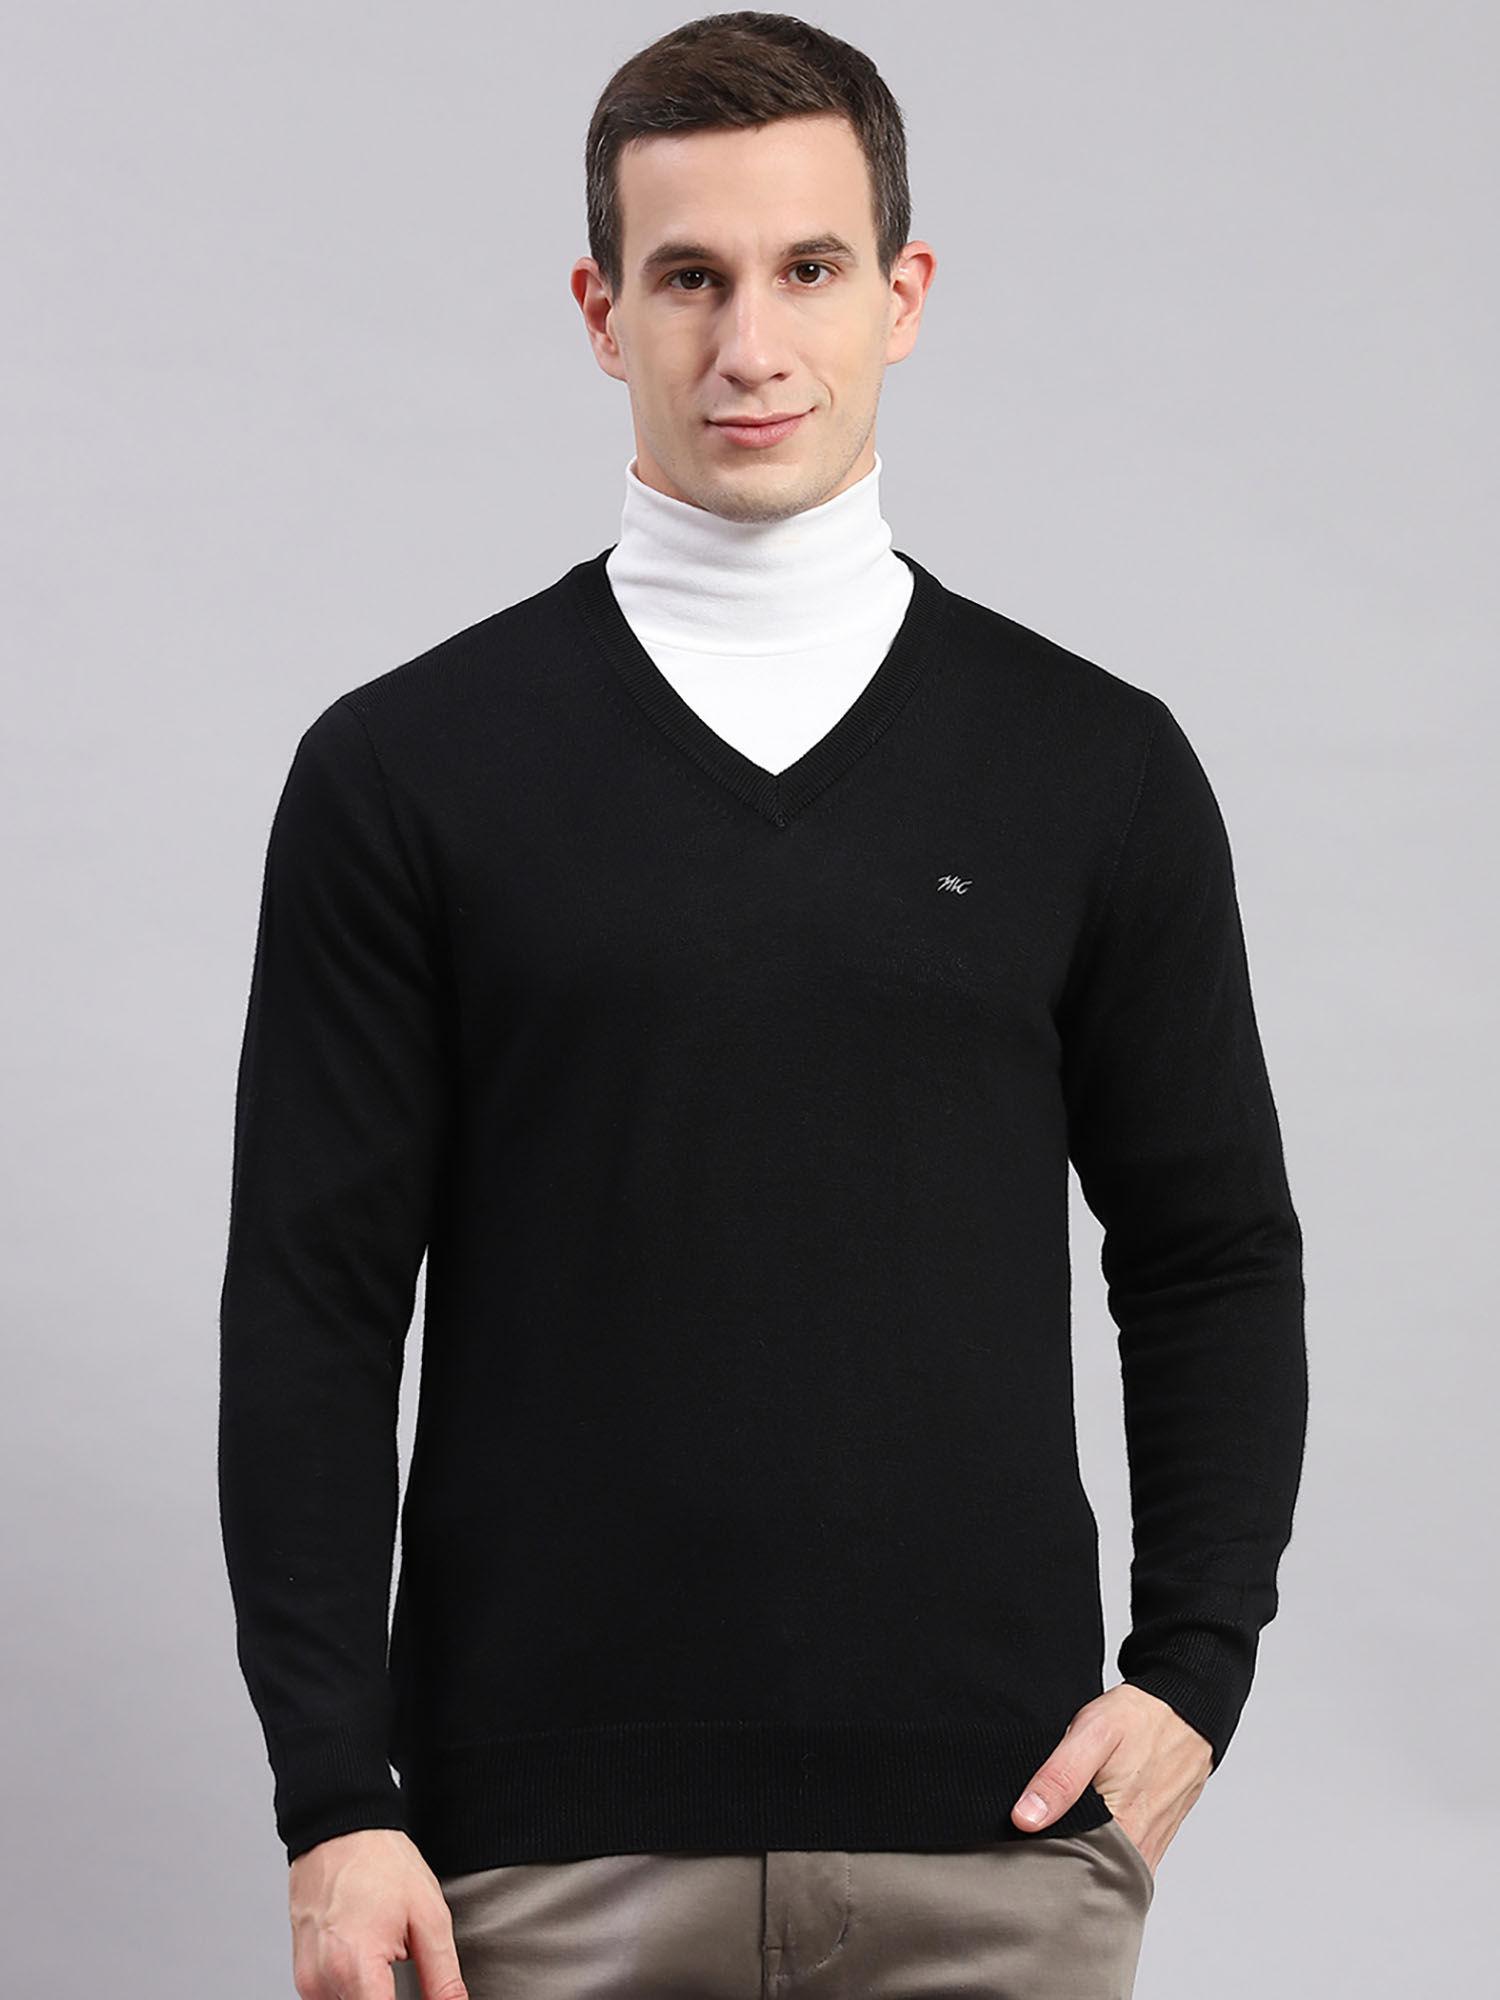 Black Solid V Neck Sweater